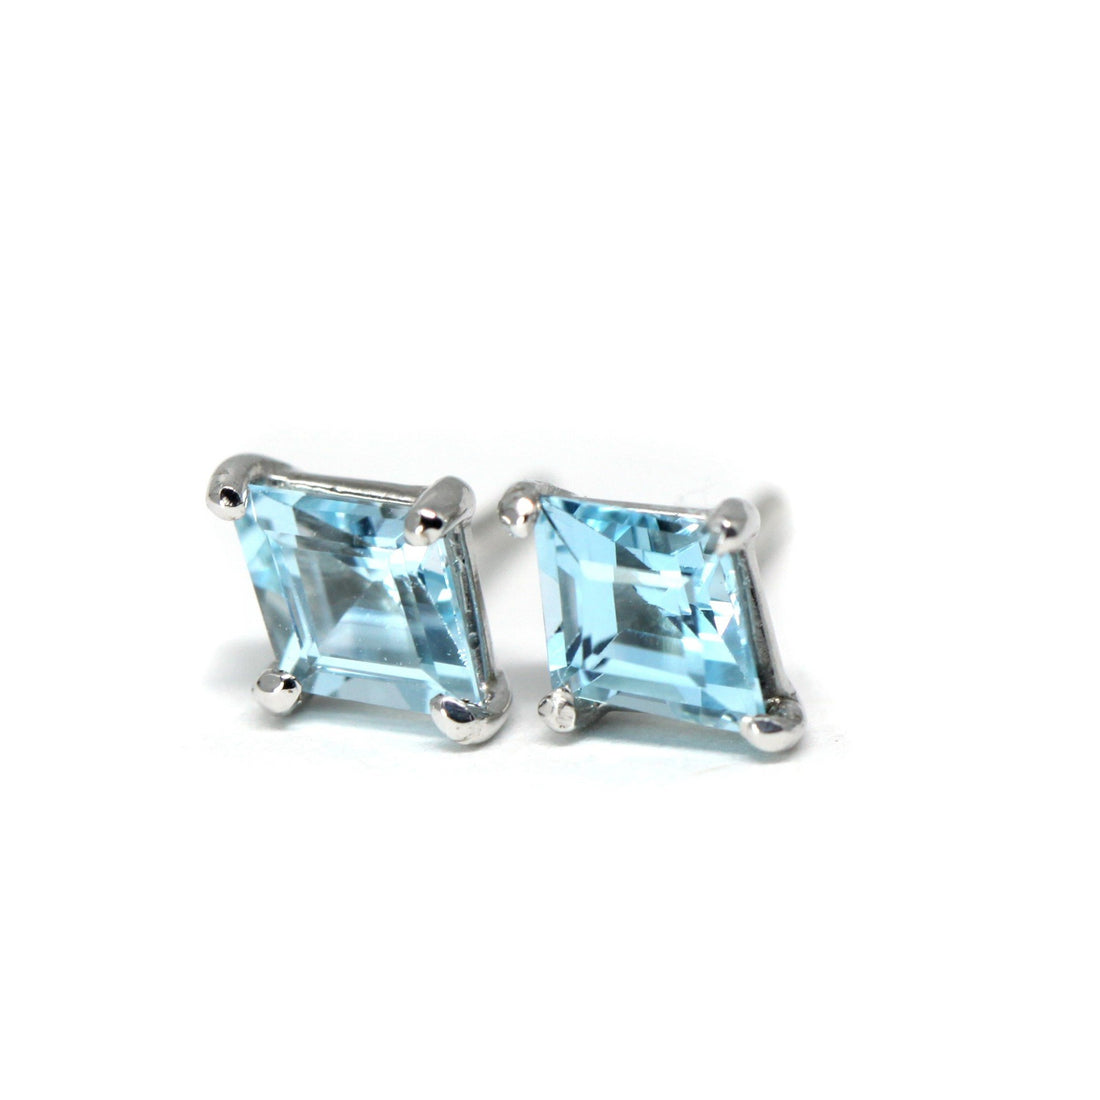 Suiss blue topaz lozenge stud earrings bena jewelry silver earrings handmade in montreal fine jewelry canada designer